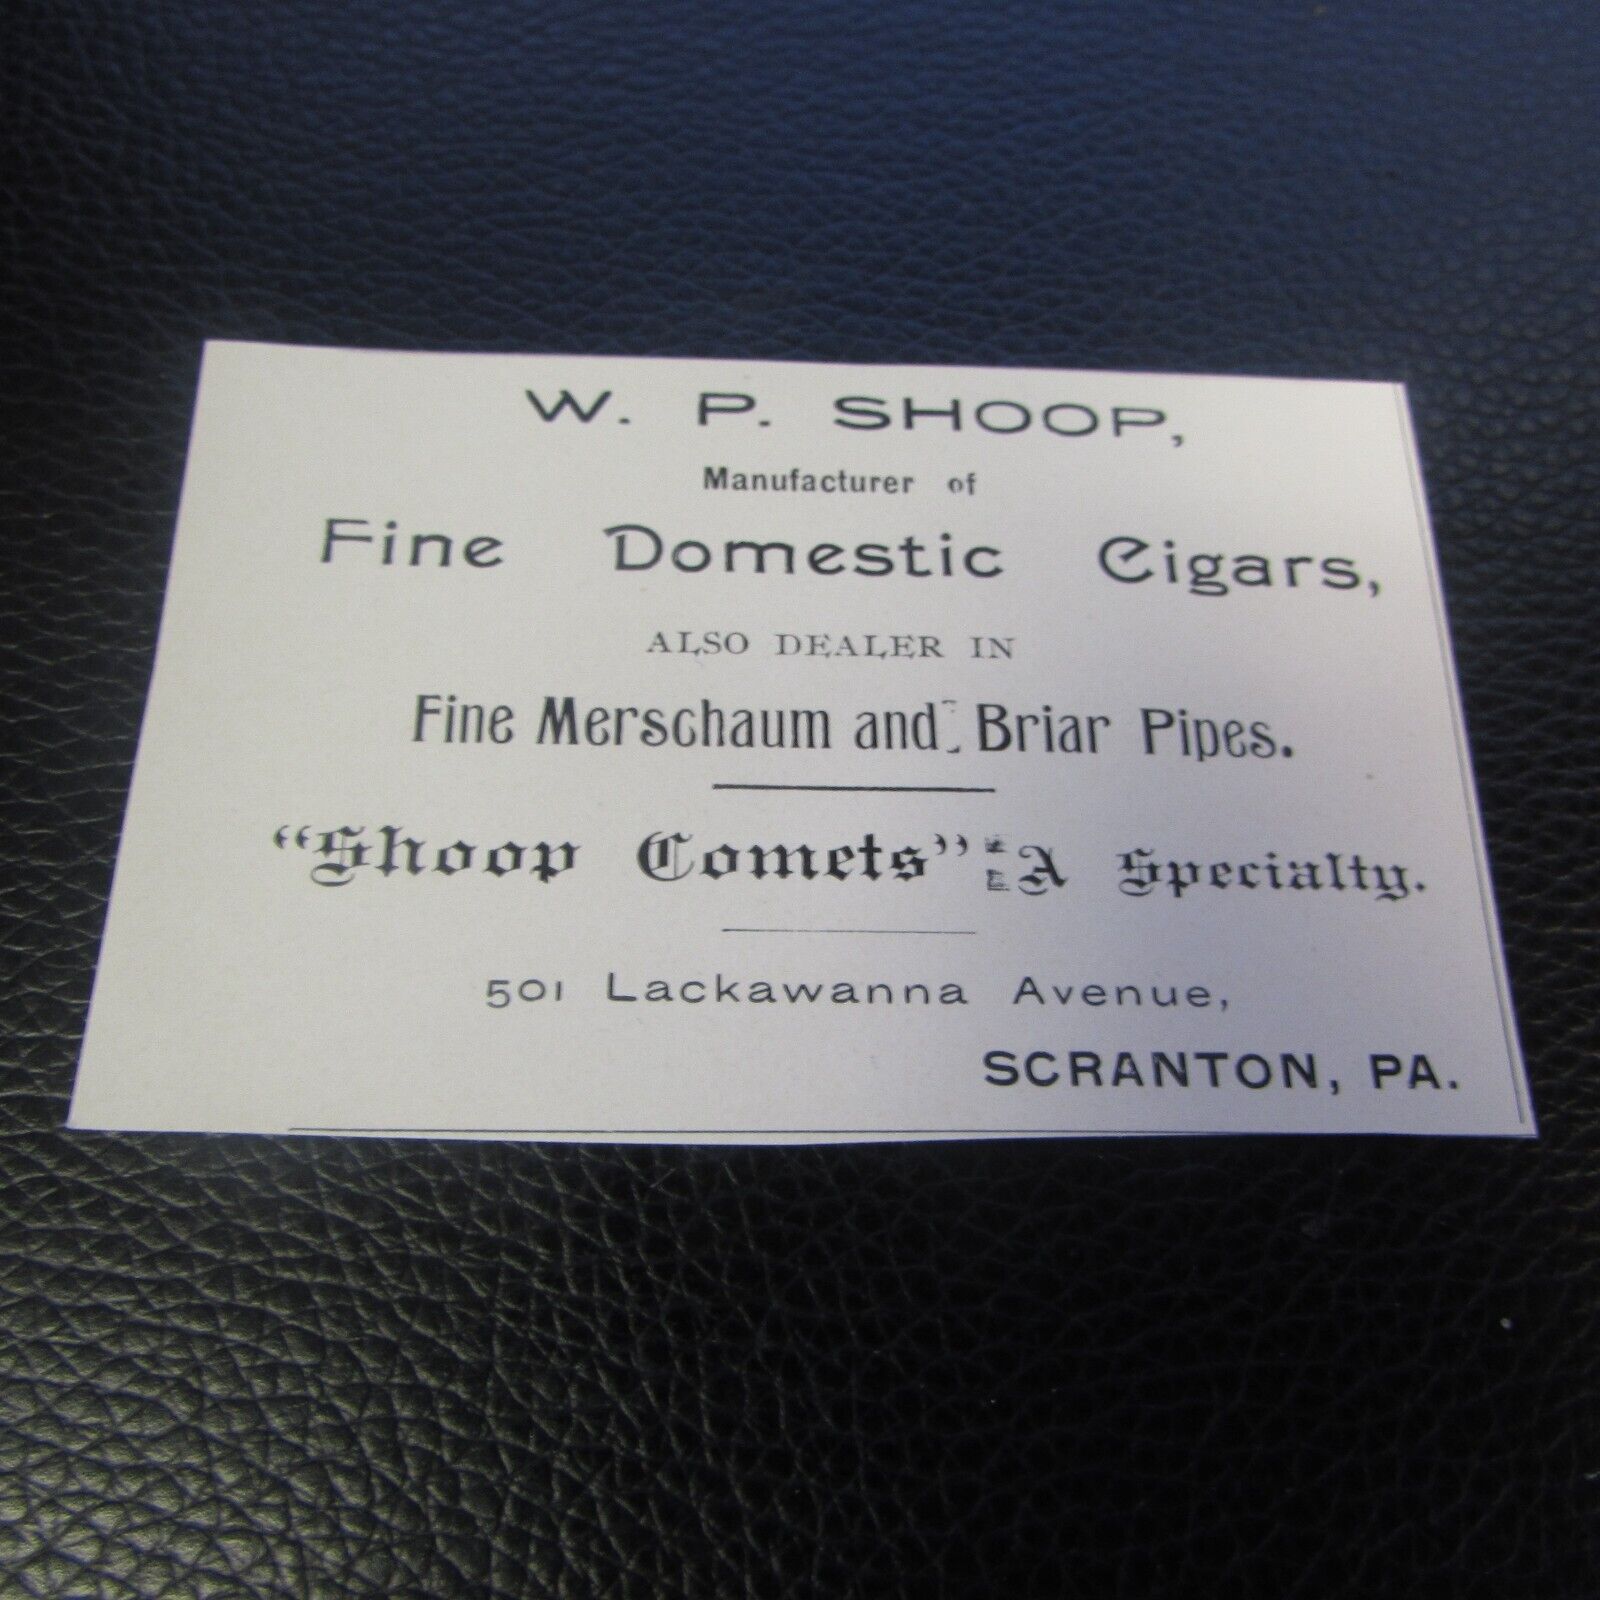 1890'S - W.P. SHOOP - FINE DOMESTIC CIGARS -  SCRANTON PA 3  BY 2 IN